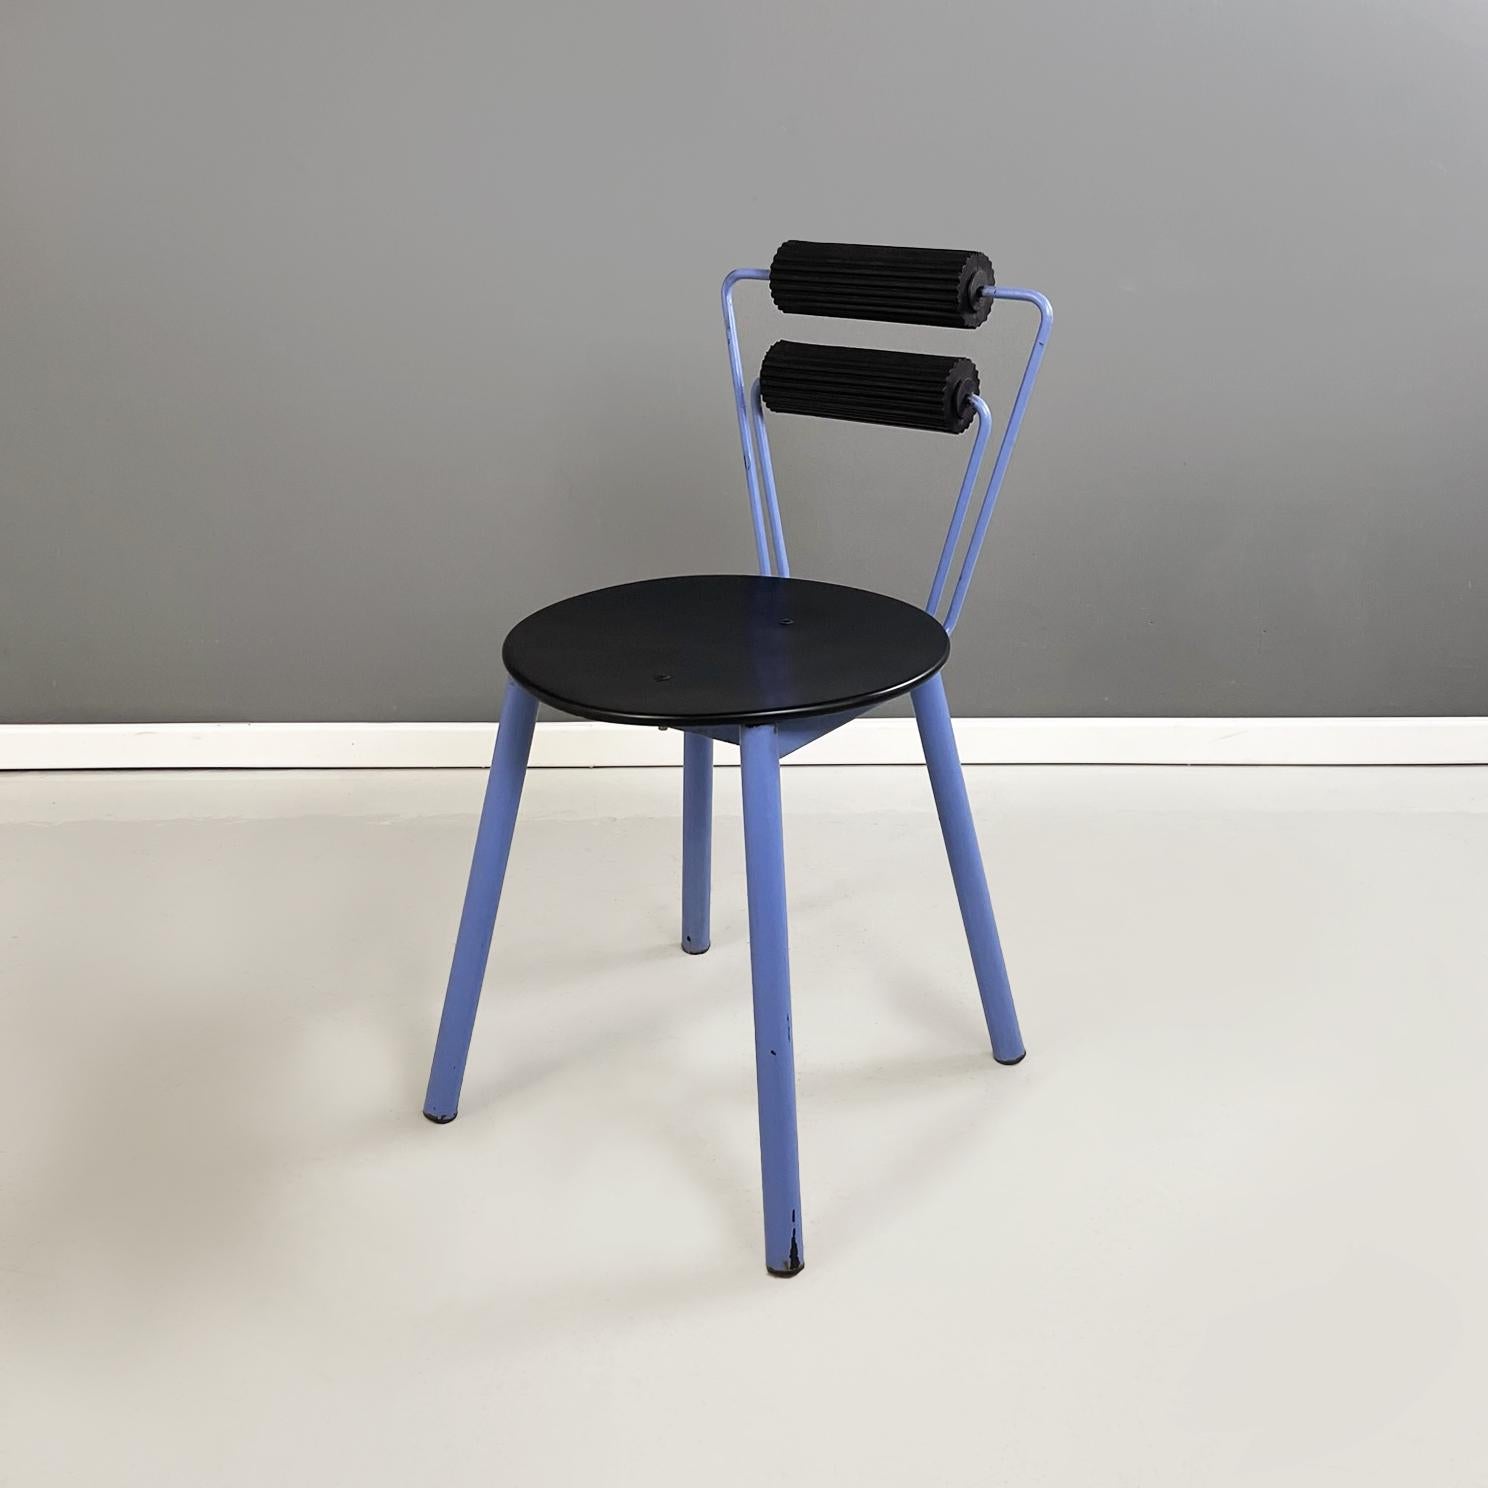 Italienische moderne Stühle aus blauem Metall, schwarzem Holz und schwarzem Gummi, 1980er Jahre
Paar fantastische und Vintage-Stühle mit runder Sitzfläche aus schwarz lackiertem Holz. Die Rückenlehne besteht aus einem Paar blau lackierter